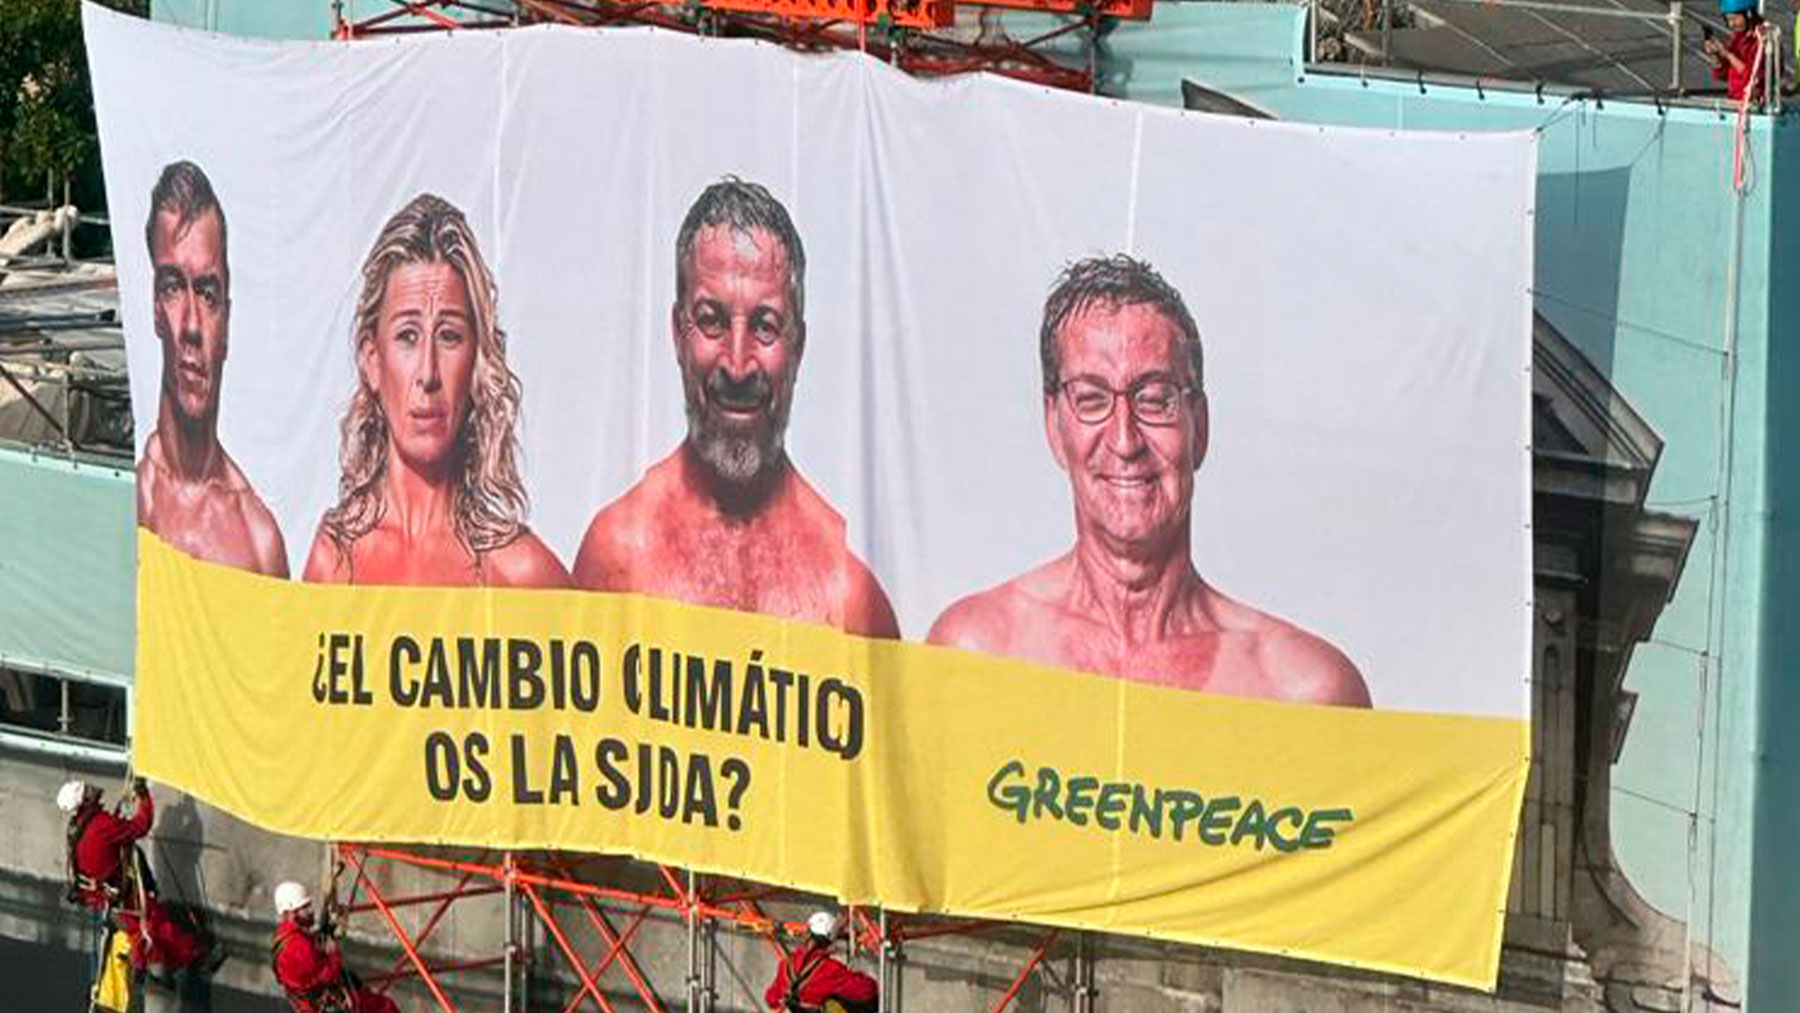 Greenpeace toma la Puerta de Alcalá con las fotos de los candidatos: «¿El cambio climático os la suda?»